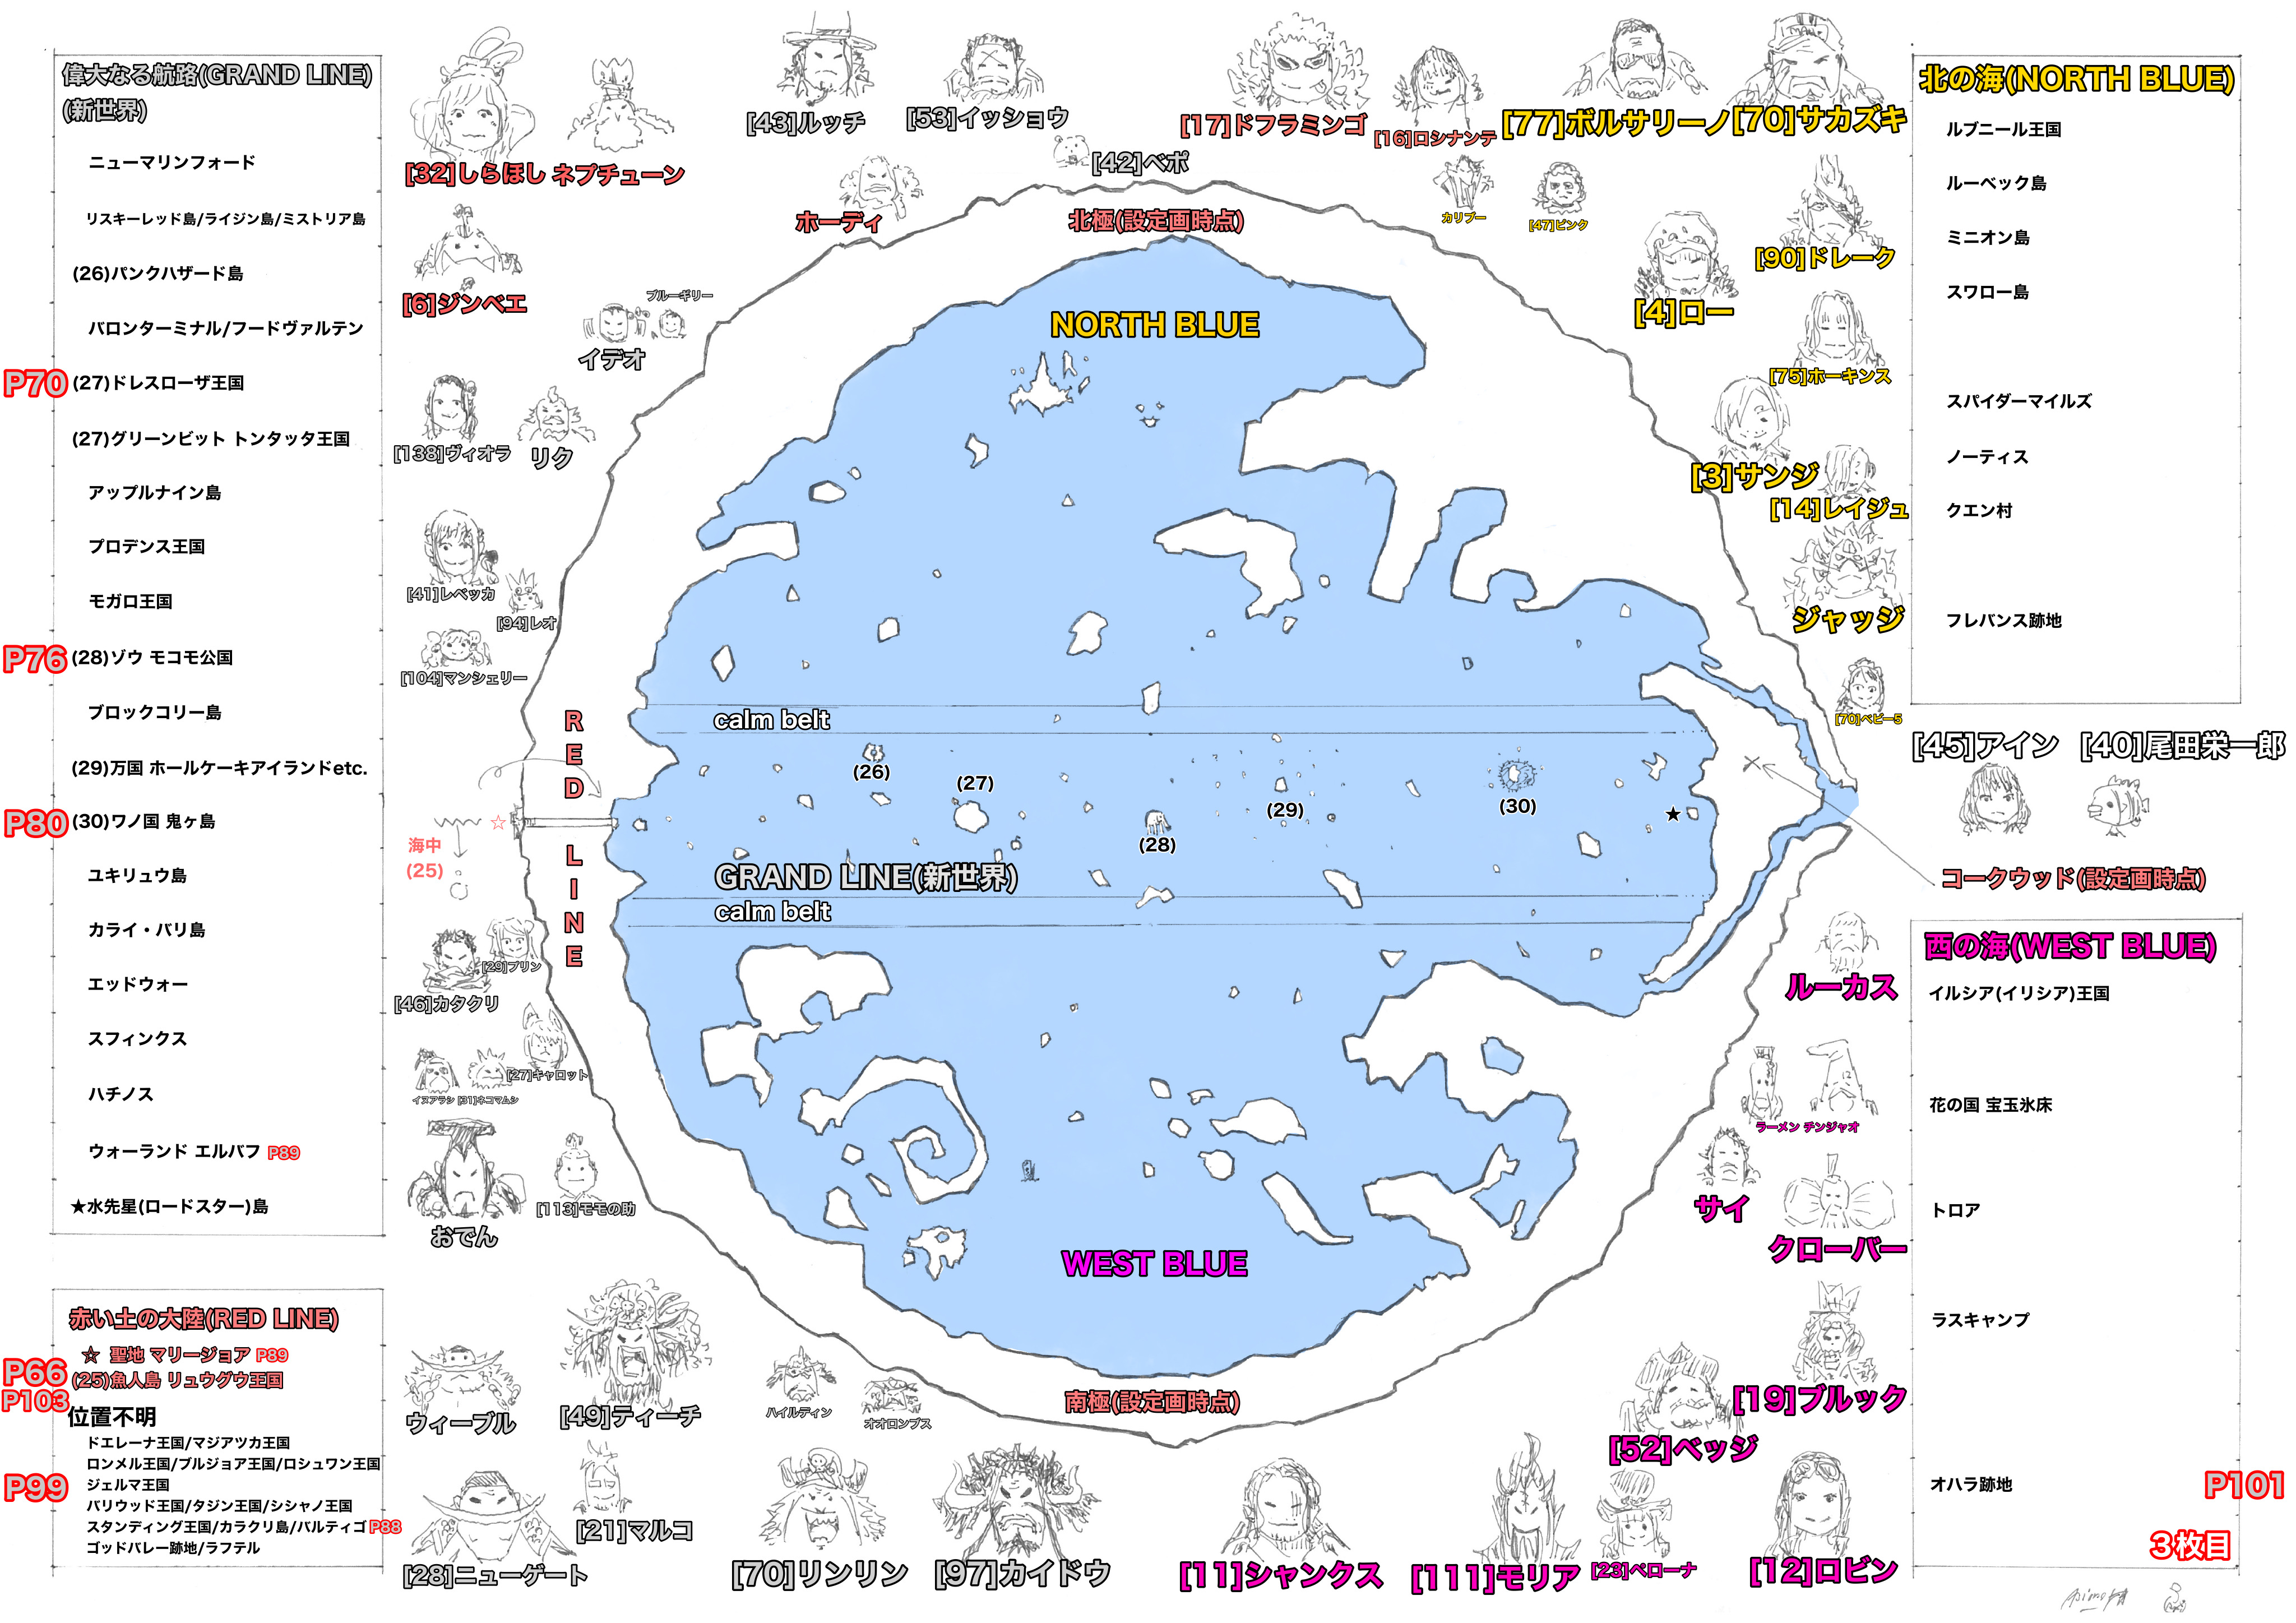 One Pieceの世界地図 集英社ゲームクリエイターズcamp